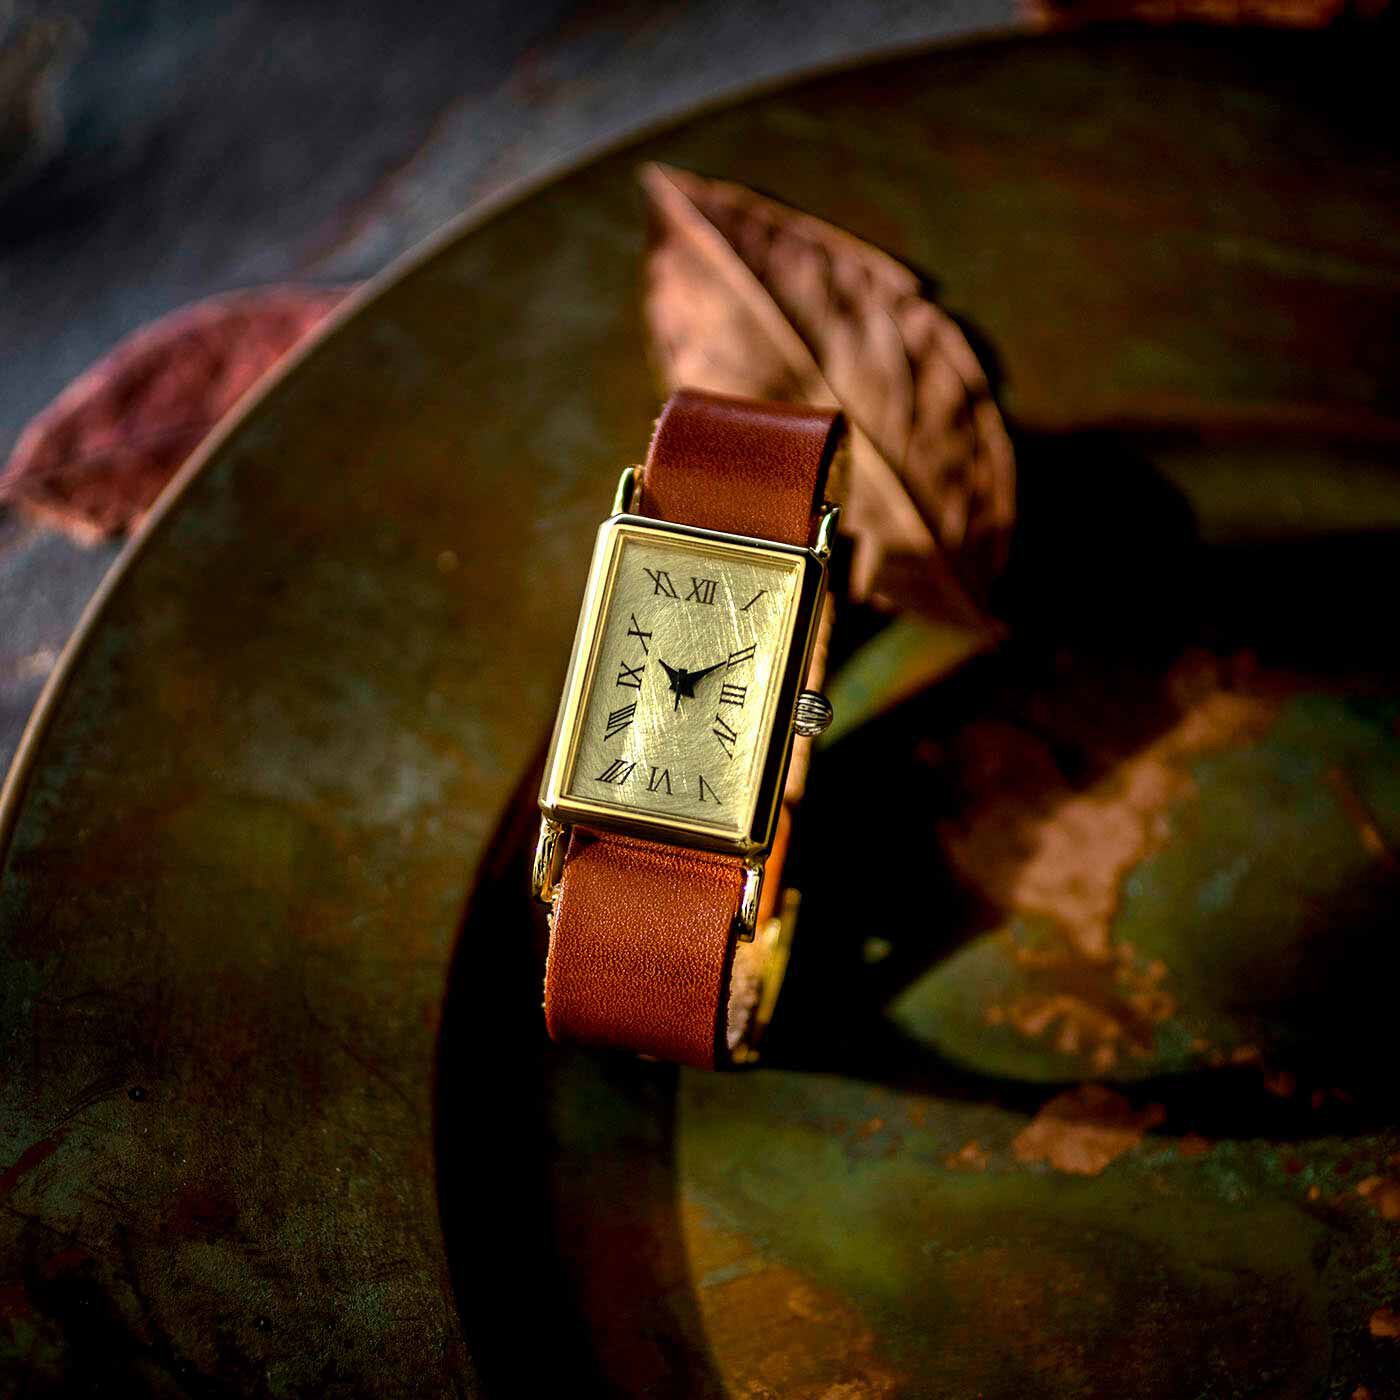 ＆Stories|滋賀の時計職人と作った　クワドラングルウォッチ〈レッドブラウン〉|日本職人プロジェクトで最初に時計を作ってくれた滋賀の時計工房さん。4年間リクエストし続け 、今回ついにこちらの工房では初となるスクエアな腕時計を作ってもらいました。